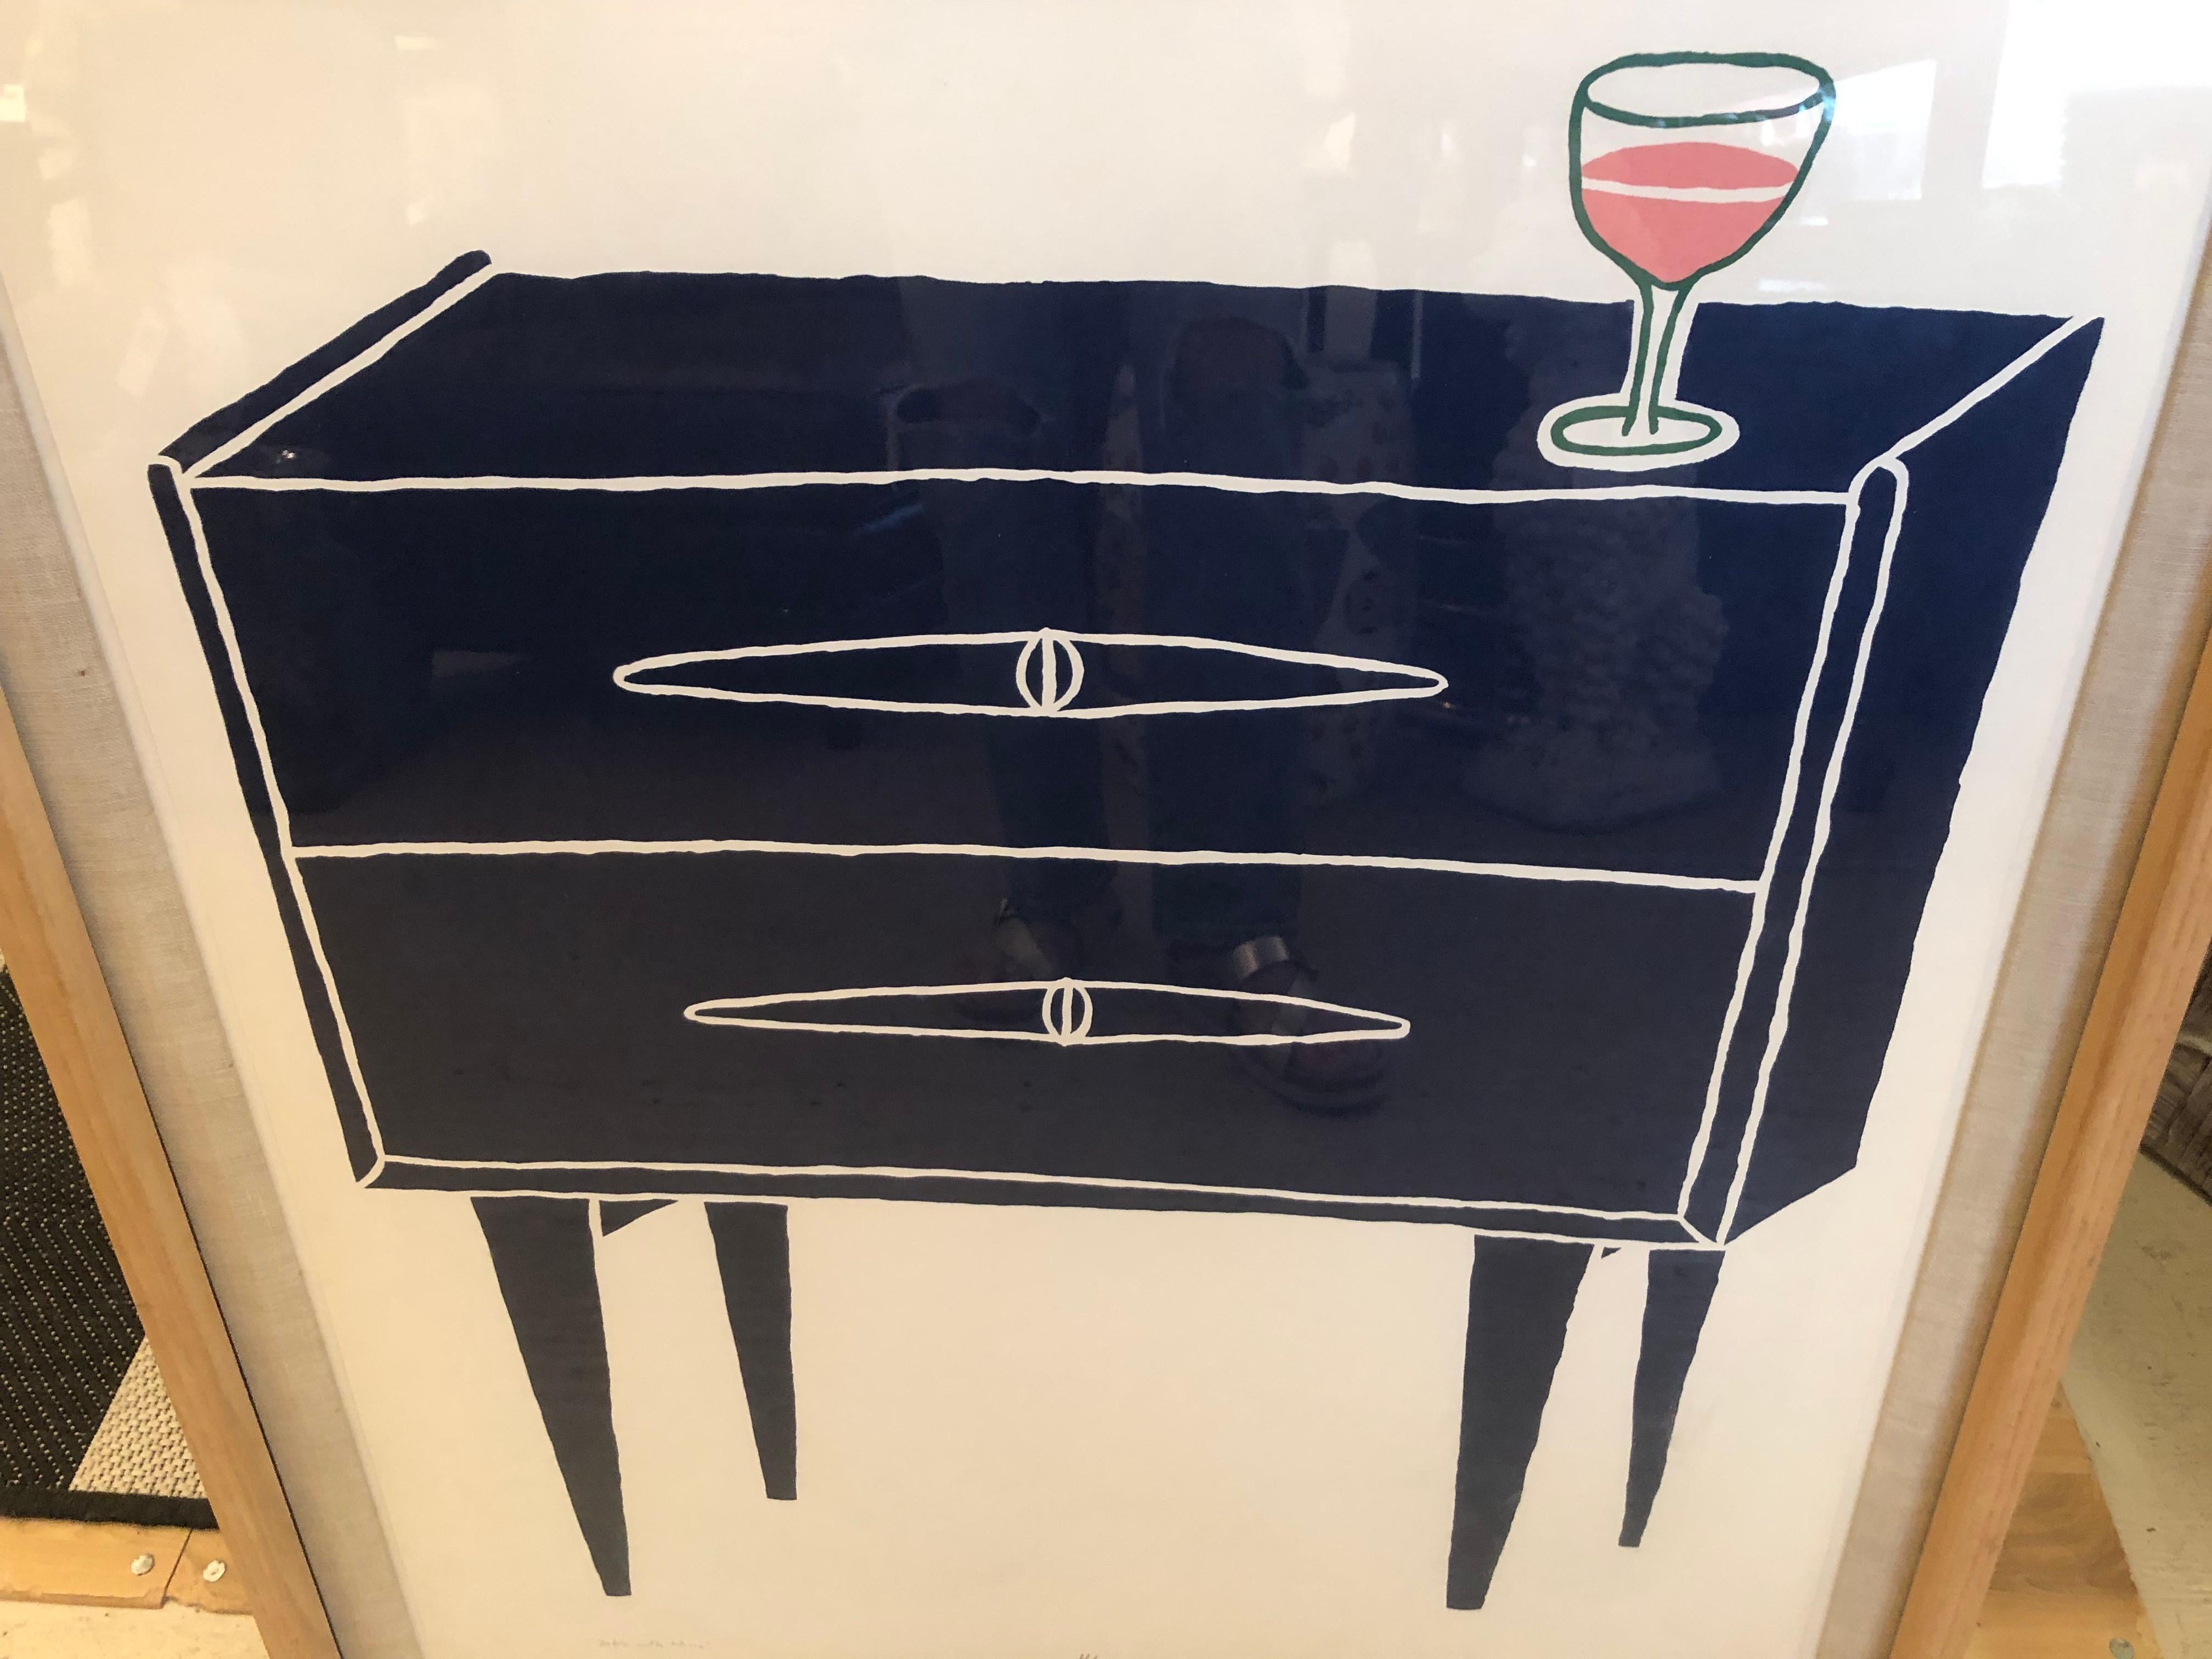 #9/12 und #4/12 limitierte und signierte Siebdrucke eines marineblauen Nachttischs, einer mit einem orangefarbenen Weinglas darauf;  der andere ein orangefarbener Aschenbecher.  Ein lustiges und kühnes Paar Pop-Art von Paul Giancola, einem Künstler